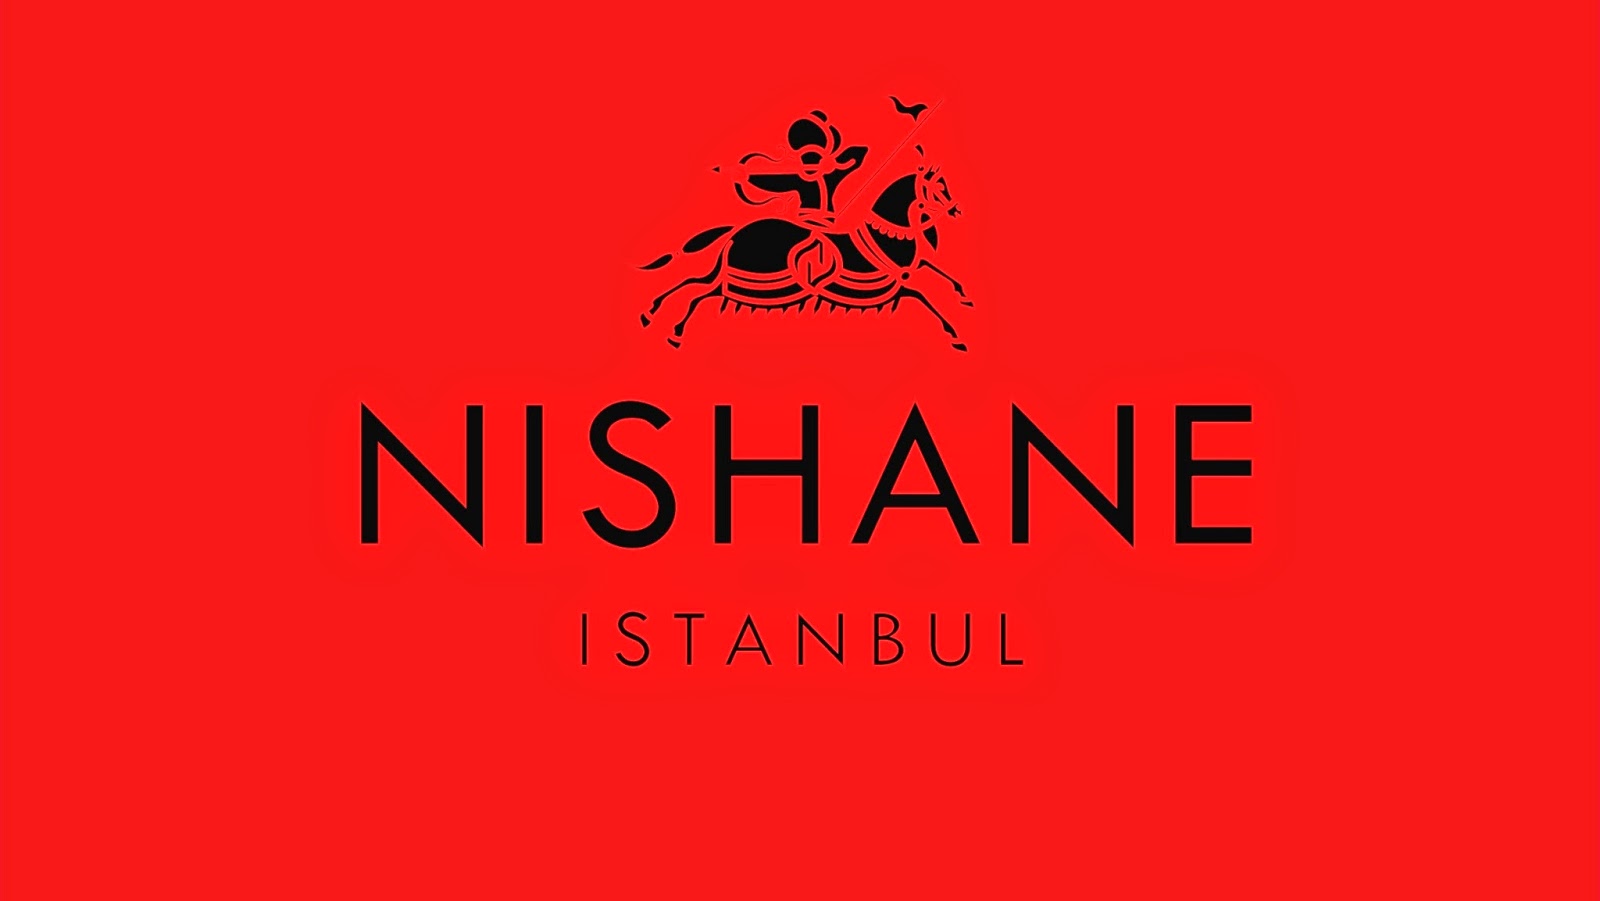 nishane_logo amblem kırmızı osmanlı atlı yaycısı ok atıyor altta istanbul yazıyor maşallah.jpg